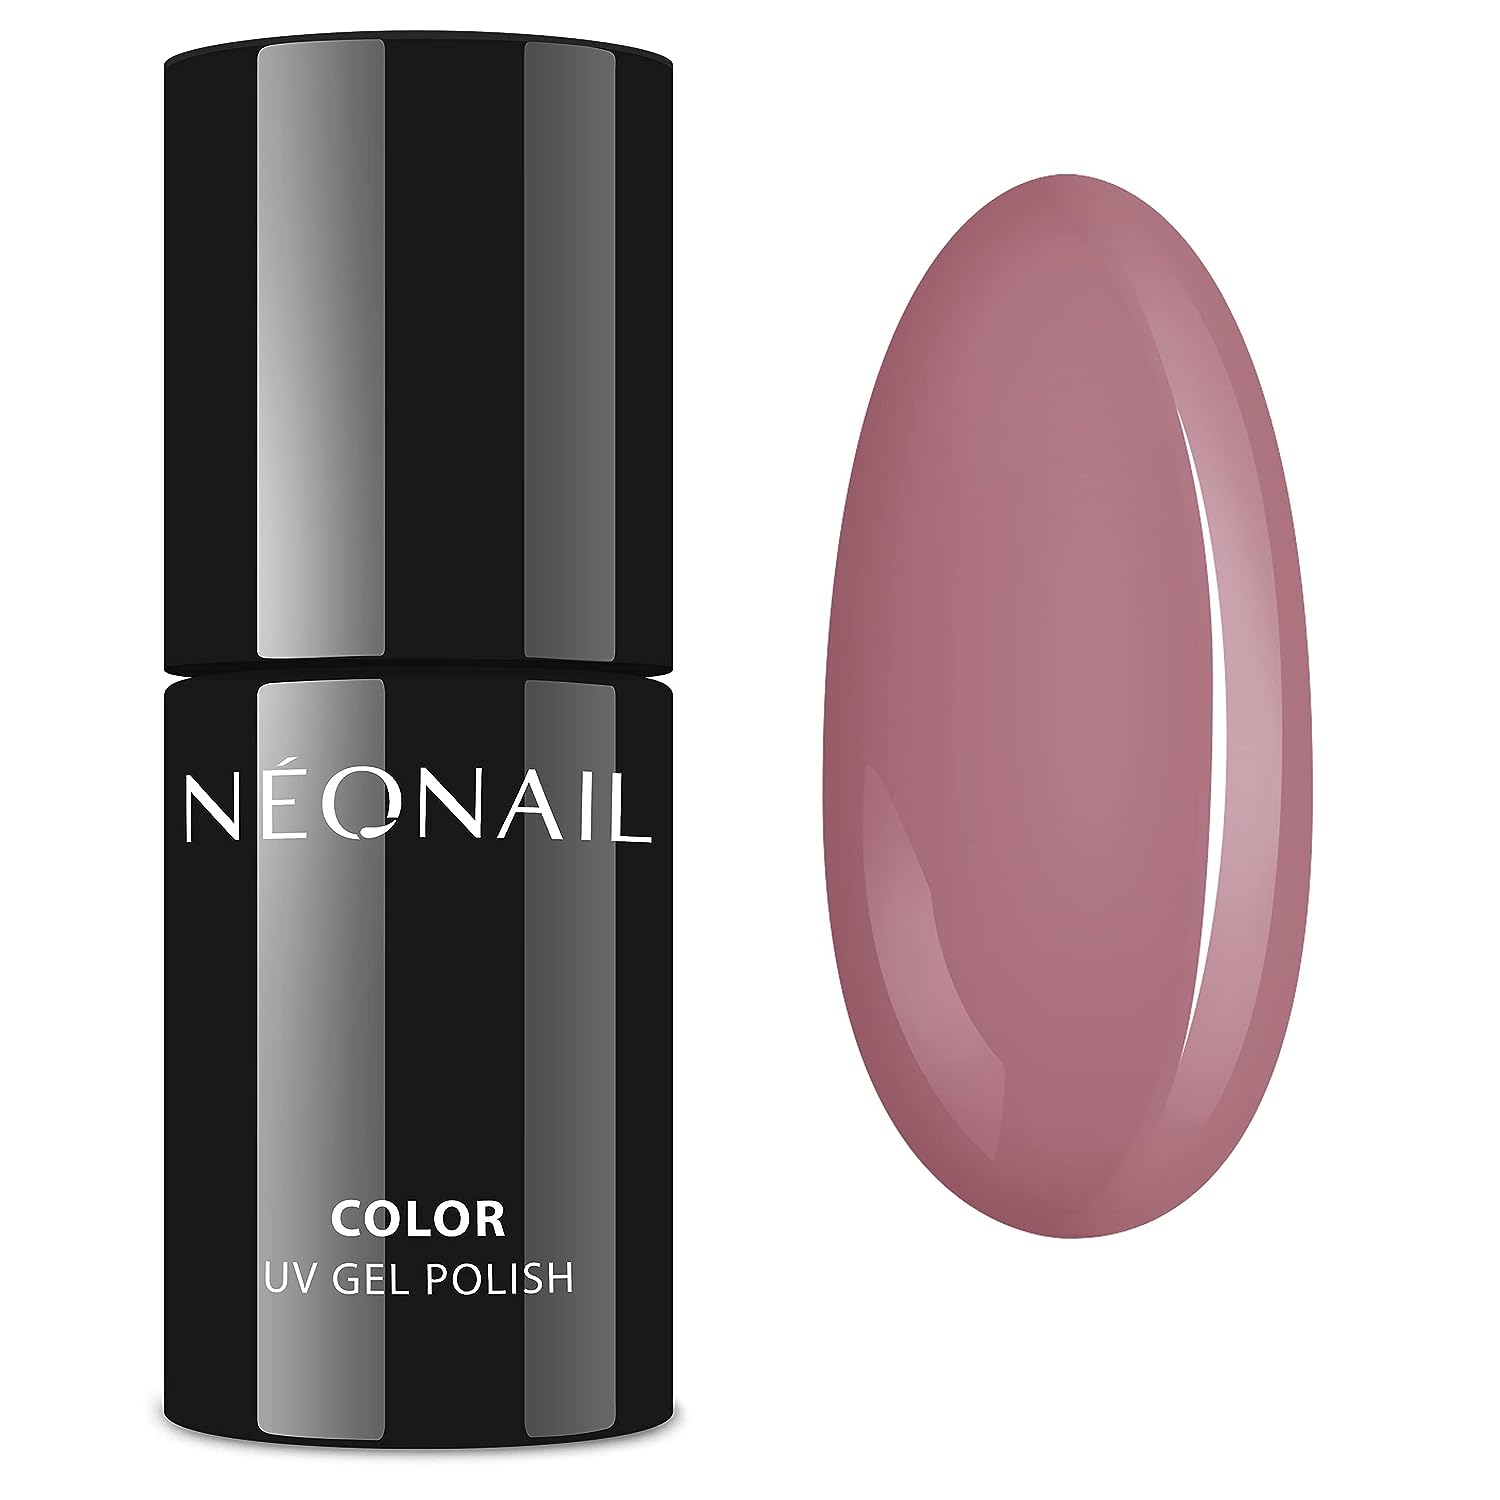 Neonail, Color UV Gel polish, odstín Rosy memory, 3 ml